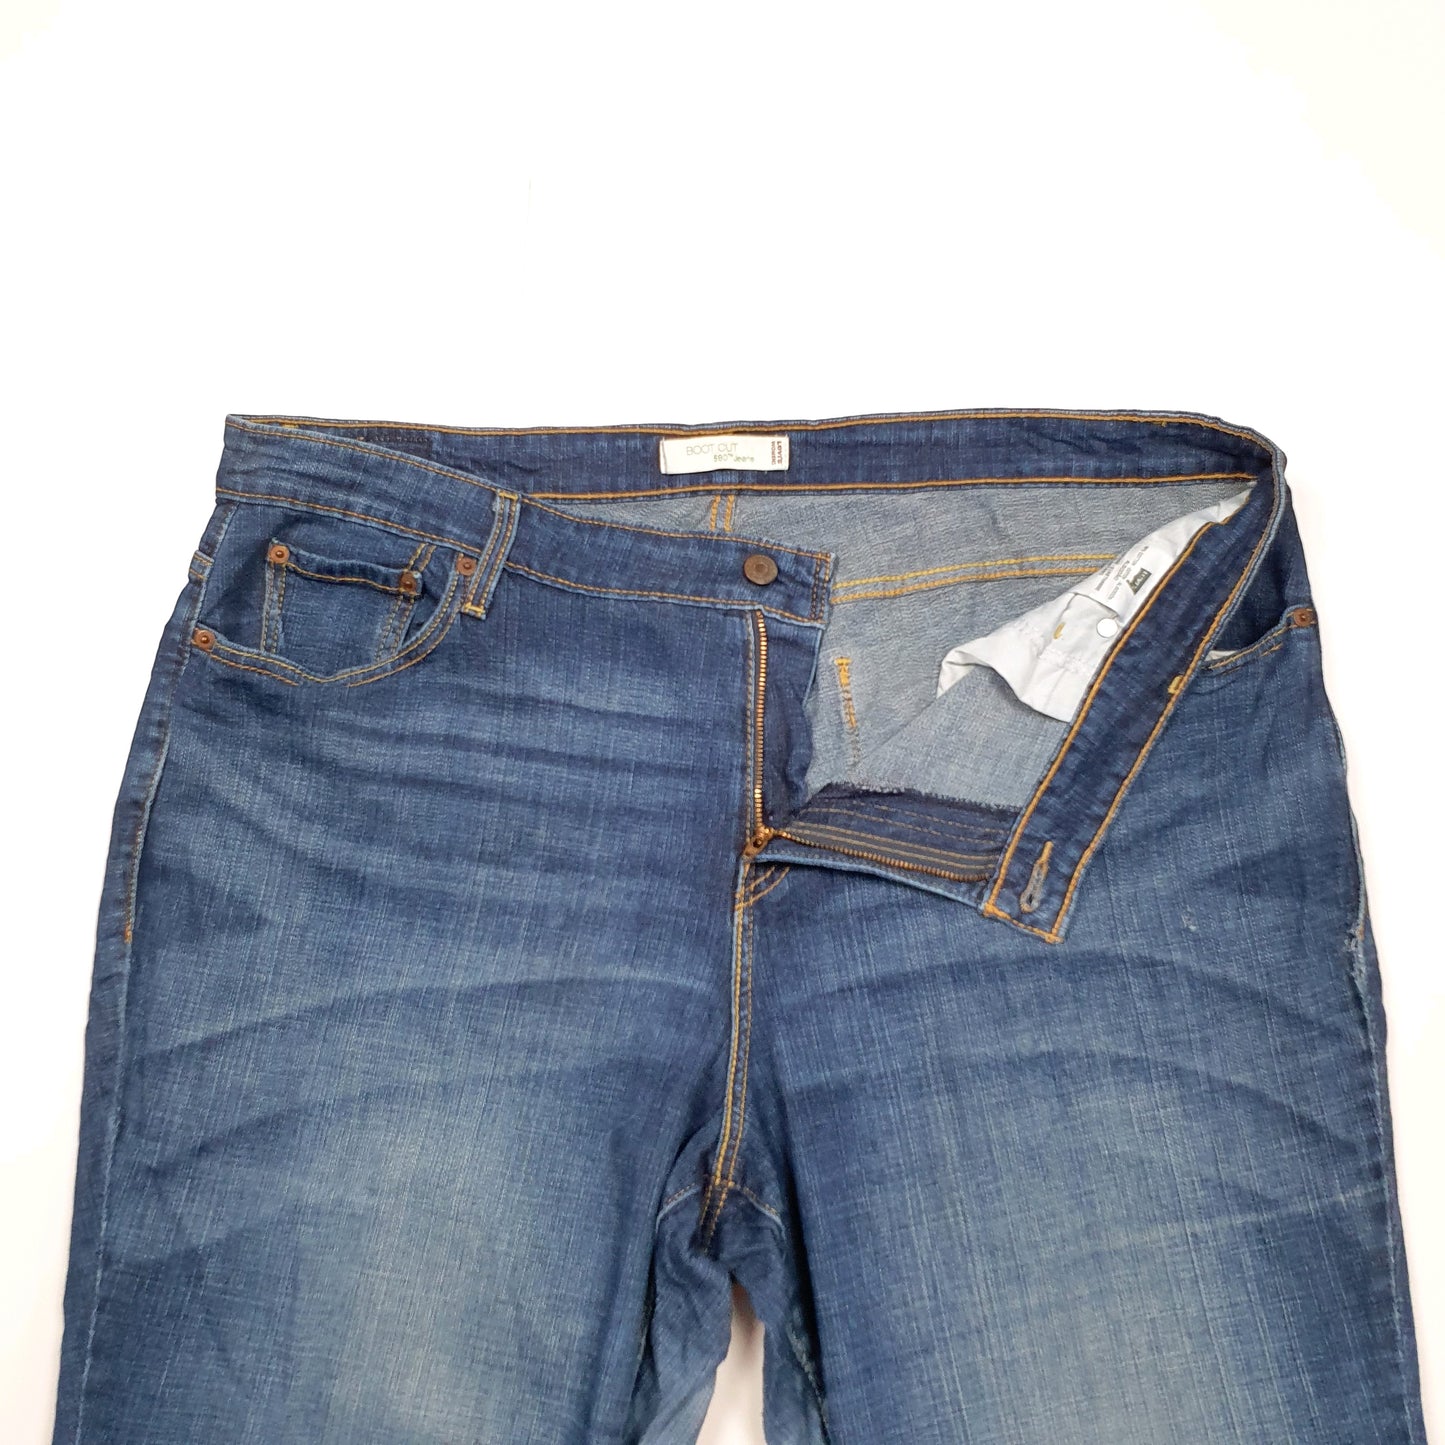 Levis 580 Bootcut Fit Jeans UK22